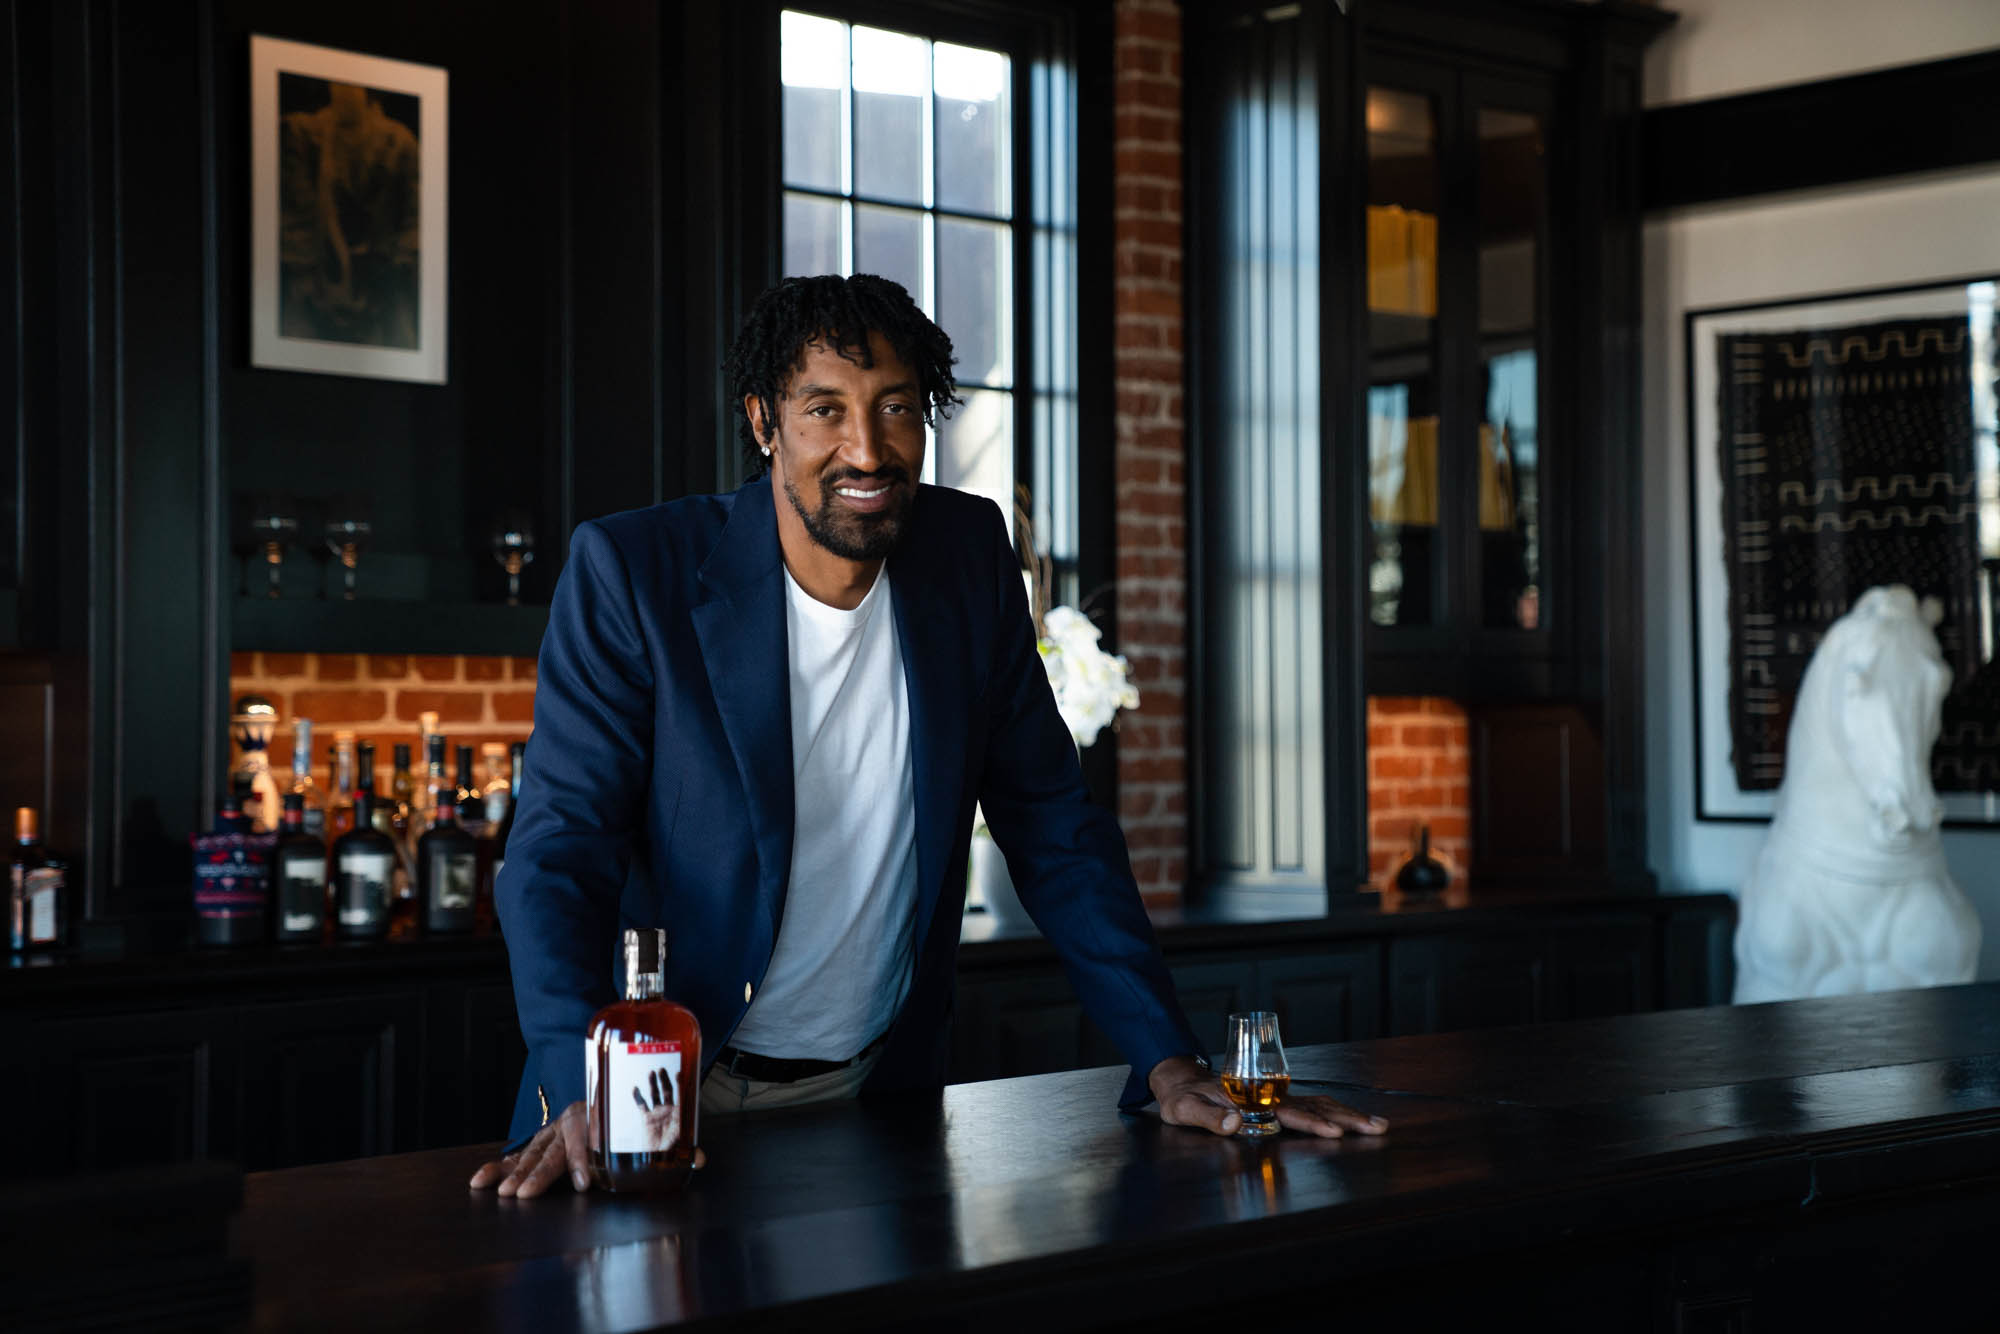 La leyenda de Chicago, Scottie Pippen, anunció el lanzamiento de su propio Bourbon